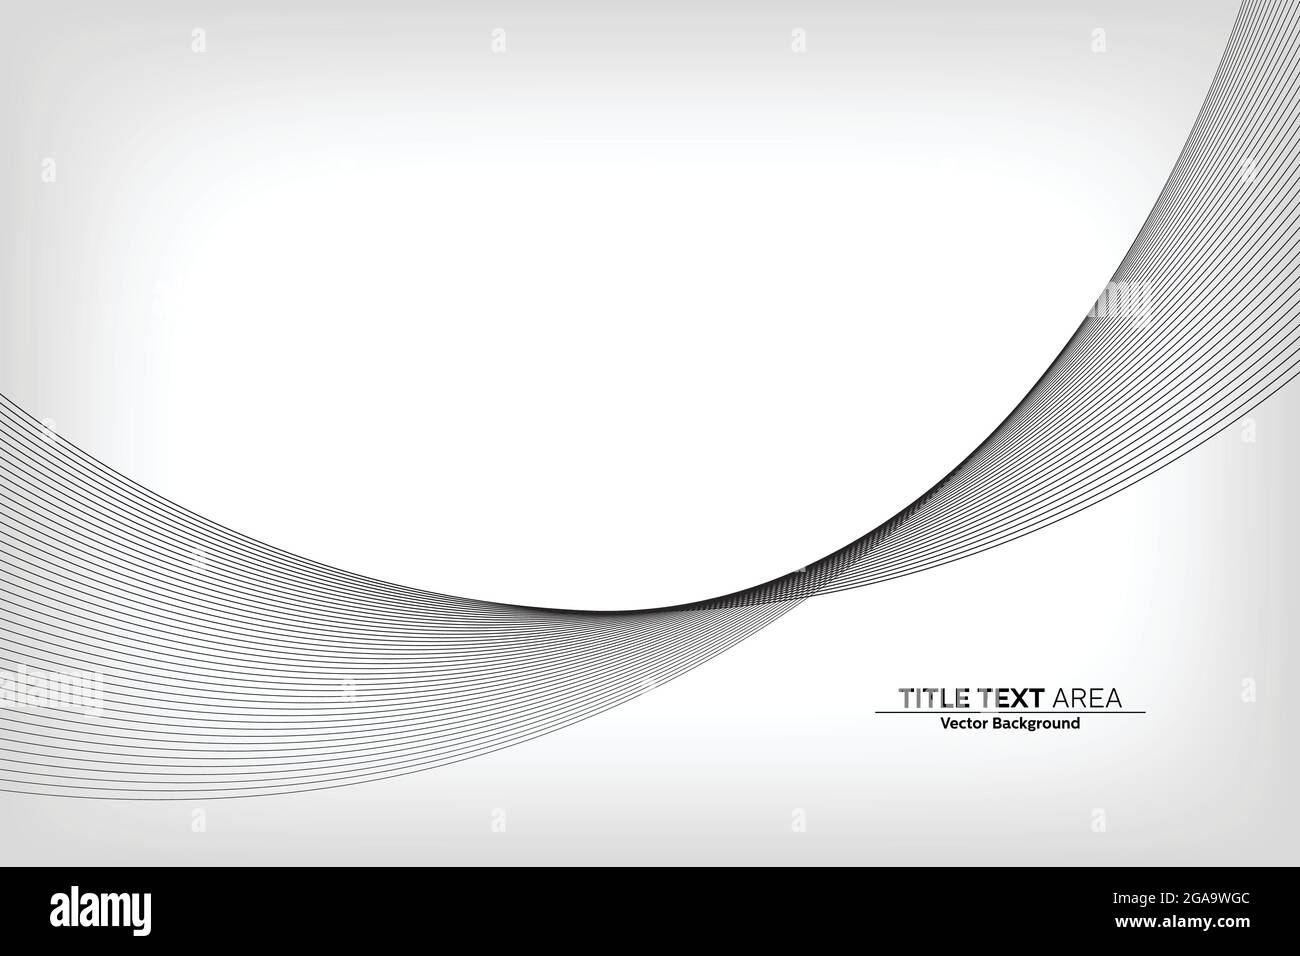 Línea moderna abstracta, onda diseñada sobre fondo blanco con área de texto de título Ilustración del Vector